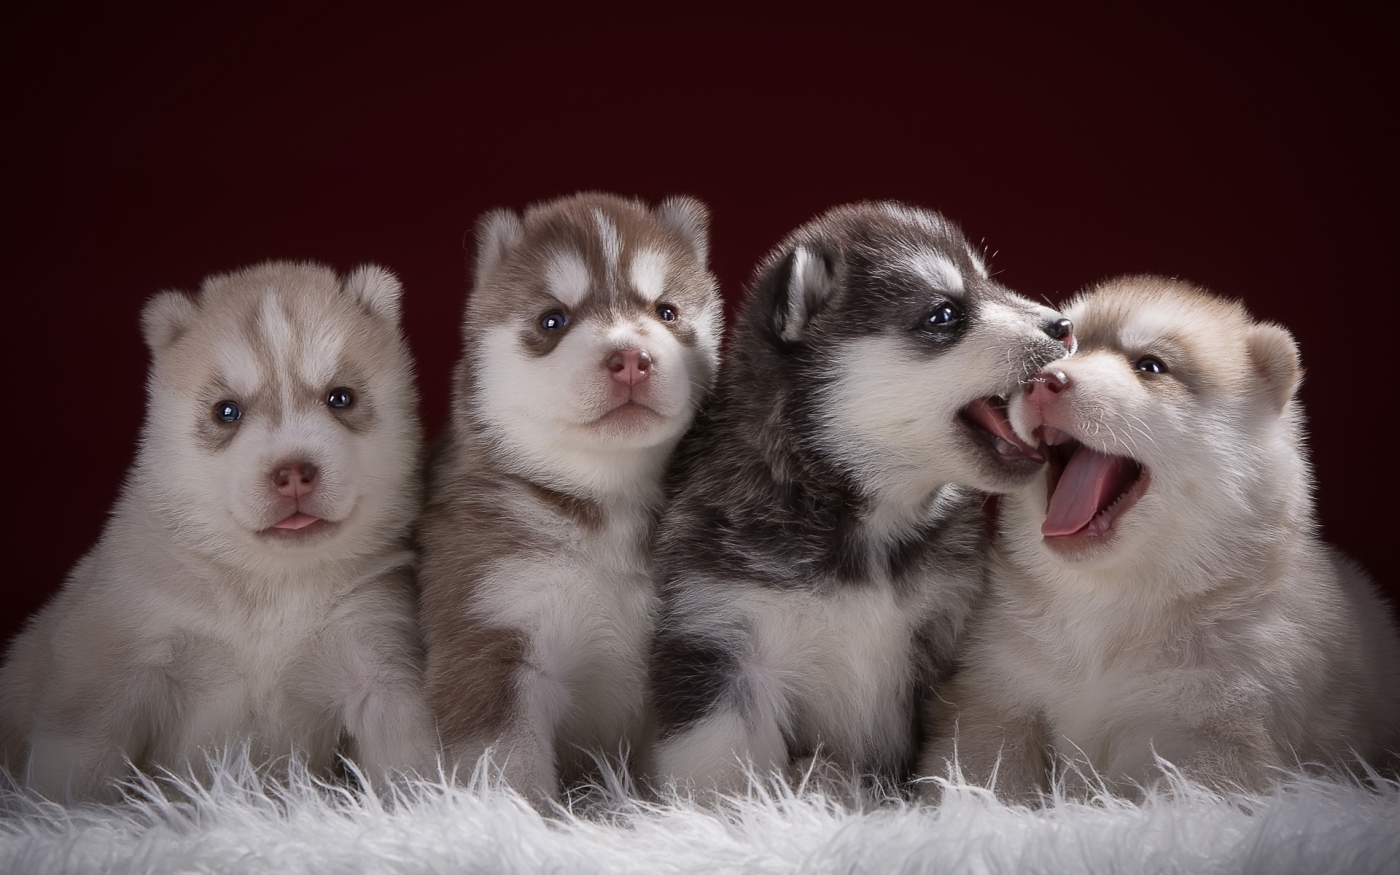 壁纸1400×1050可爱小狗宝宝图片 Lovely Puppy dogs Baby Puppies Photos壁纸,家有幼犬-可爱小狗壁纸 ...